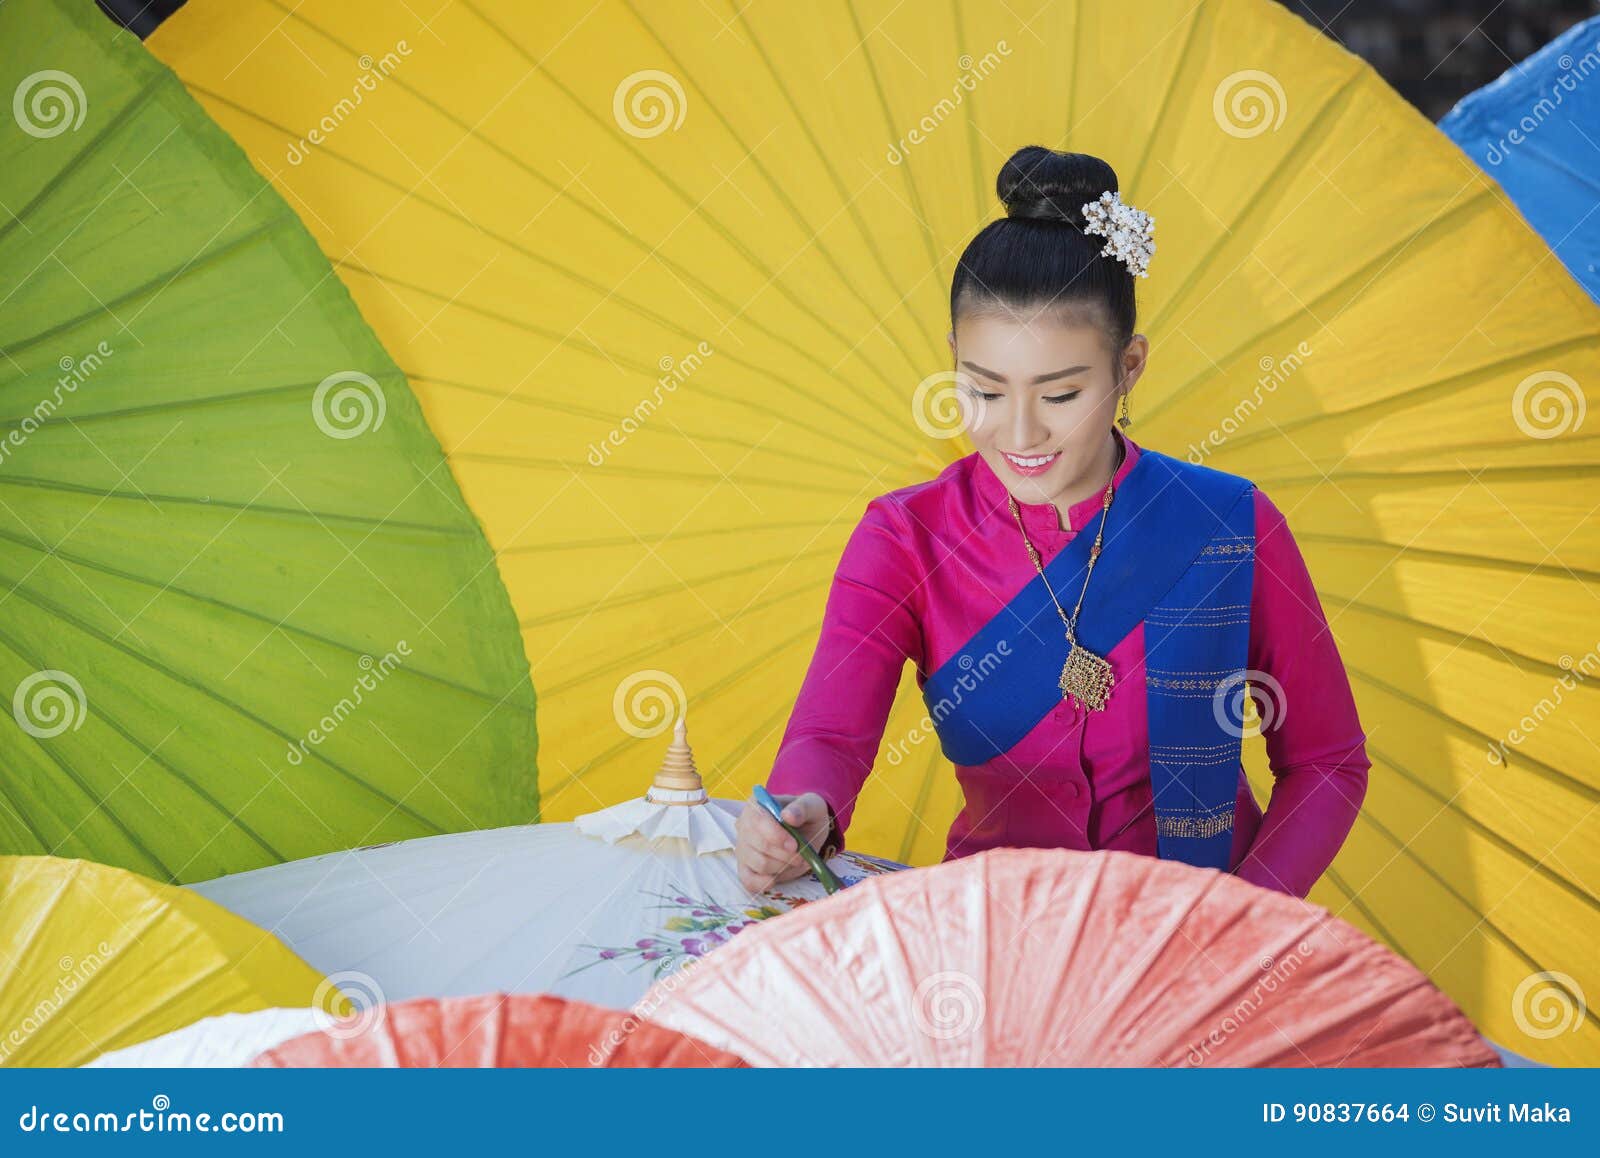 Lanna Umbrella, Boo Slang, Chiang Mai, guarda-chuvas coloridos do produto feito a mão faz o olhar bonito com grandes cores e testes padrões do guarda-chuva em atraente